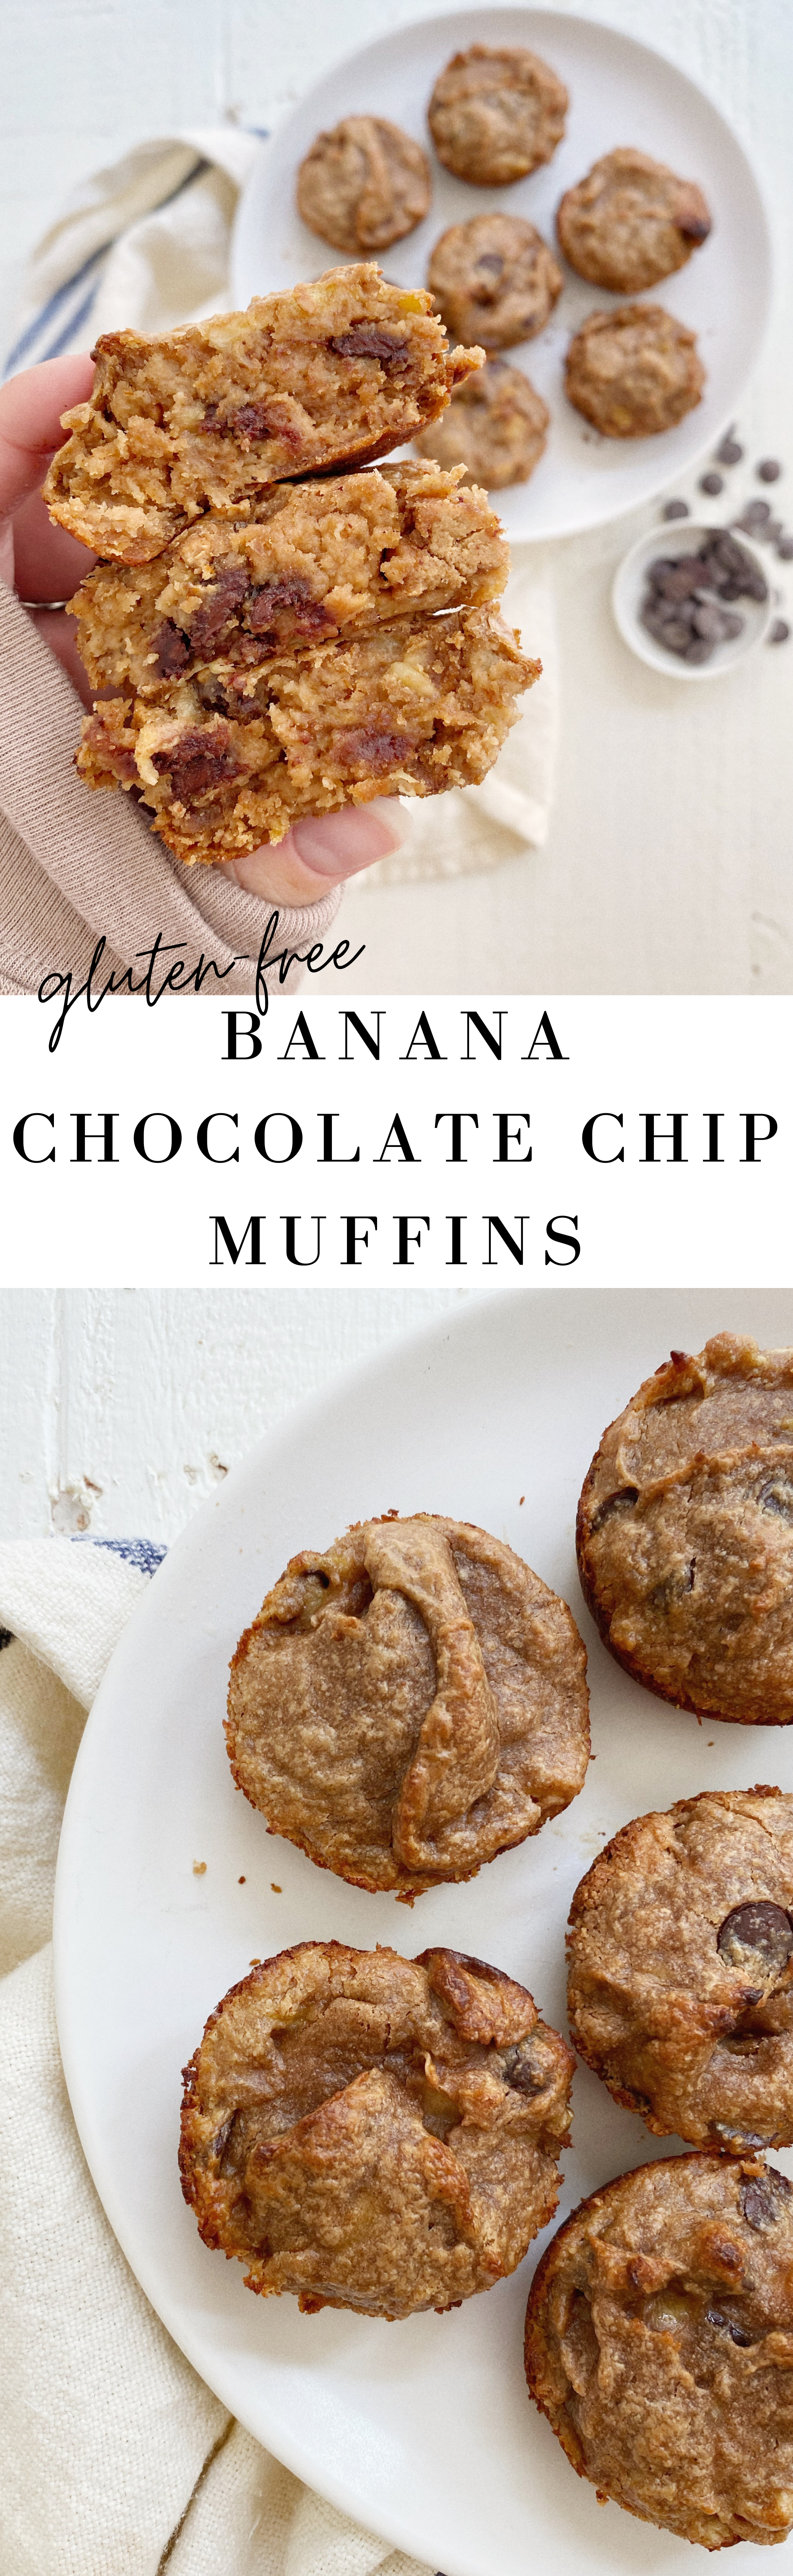 gluten free banana chocolate chip muffins